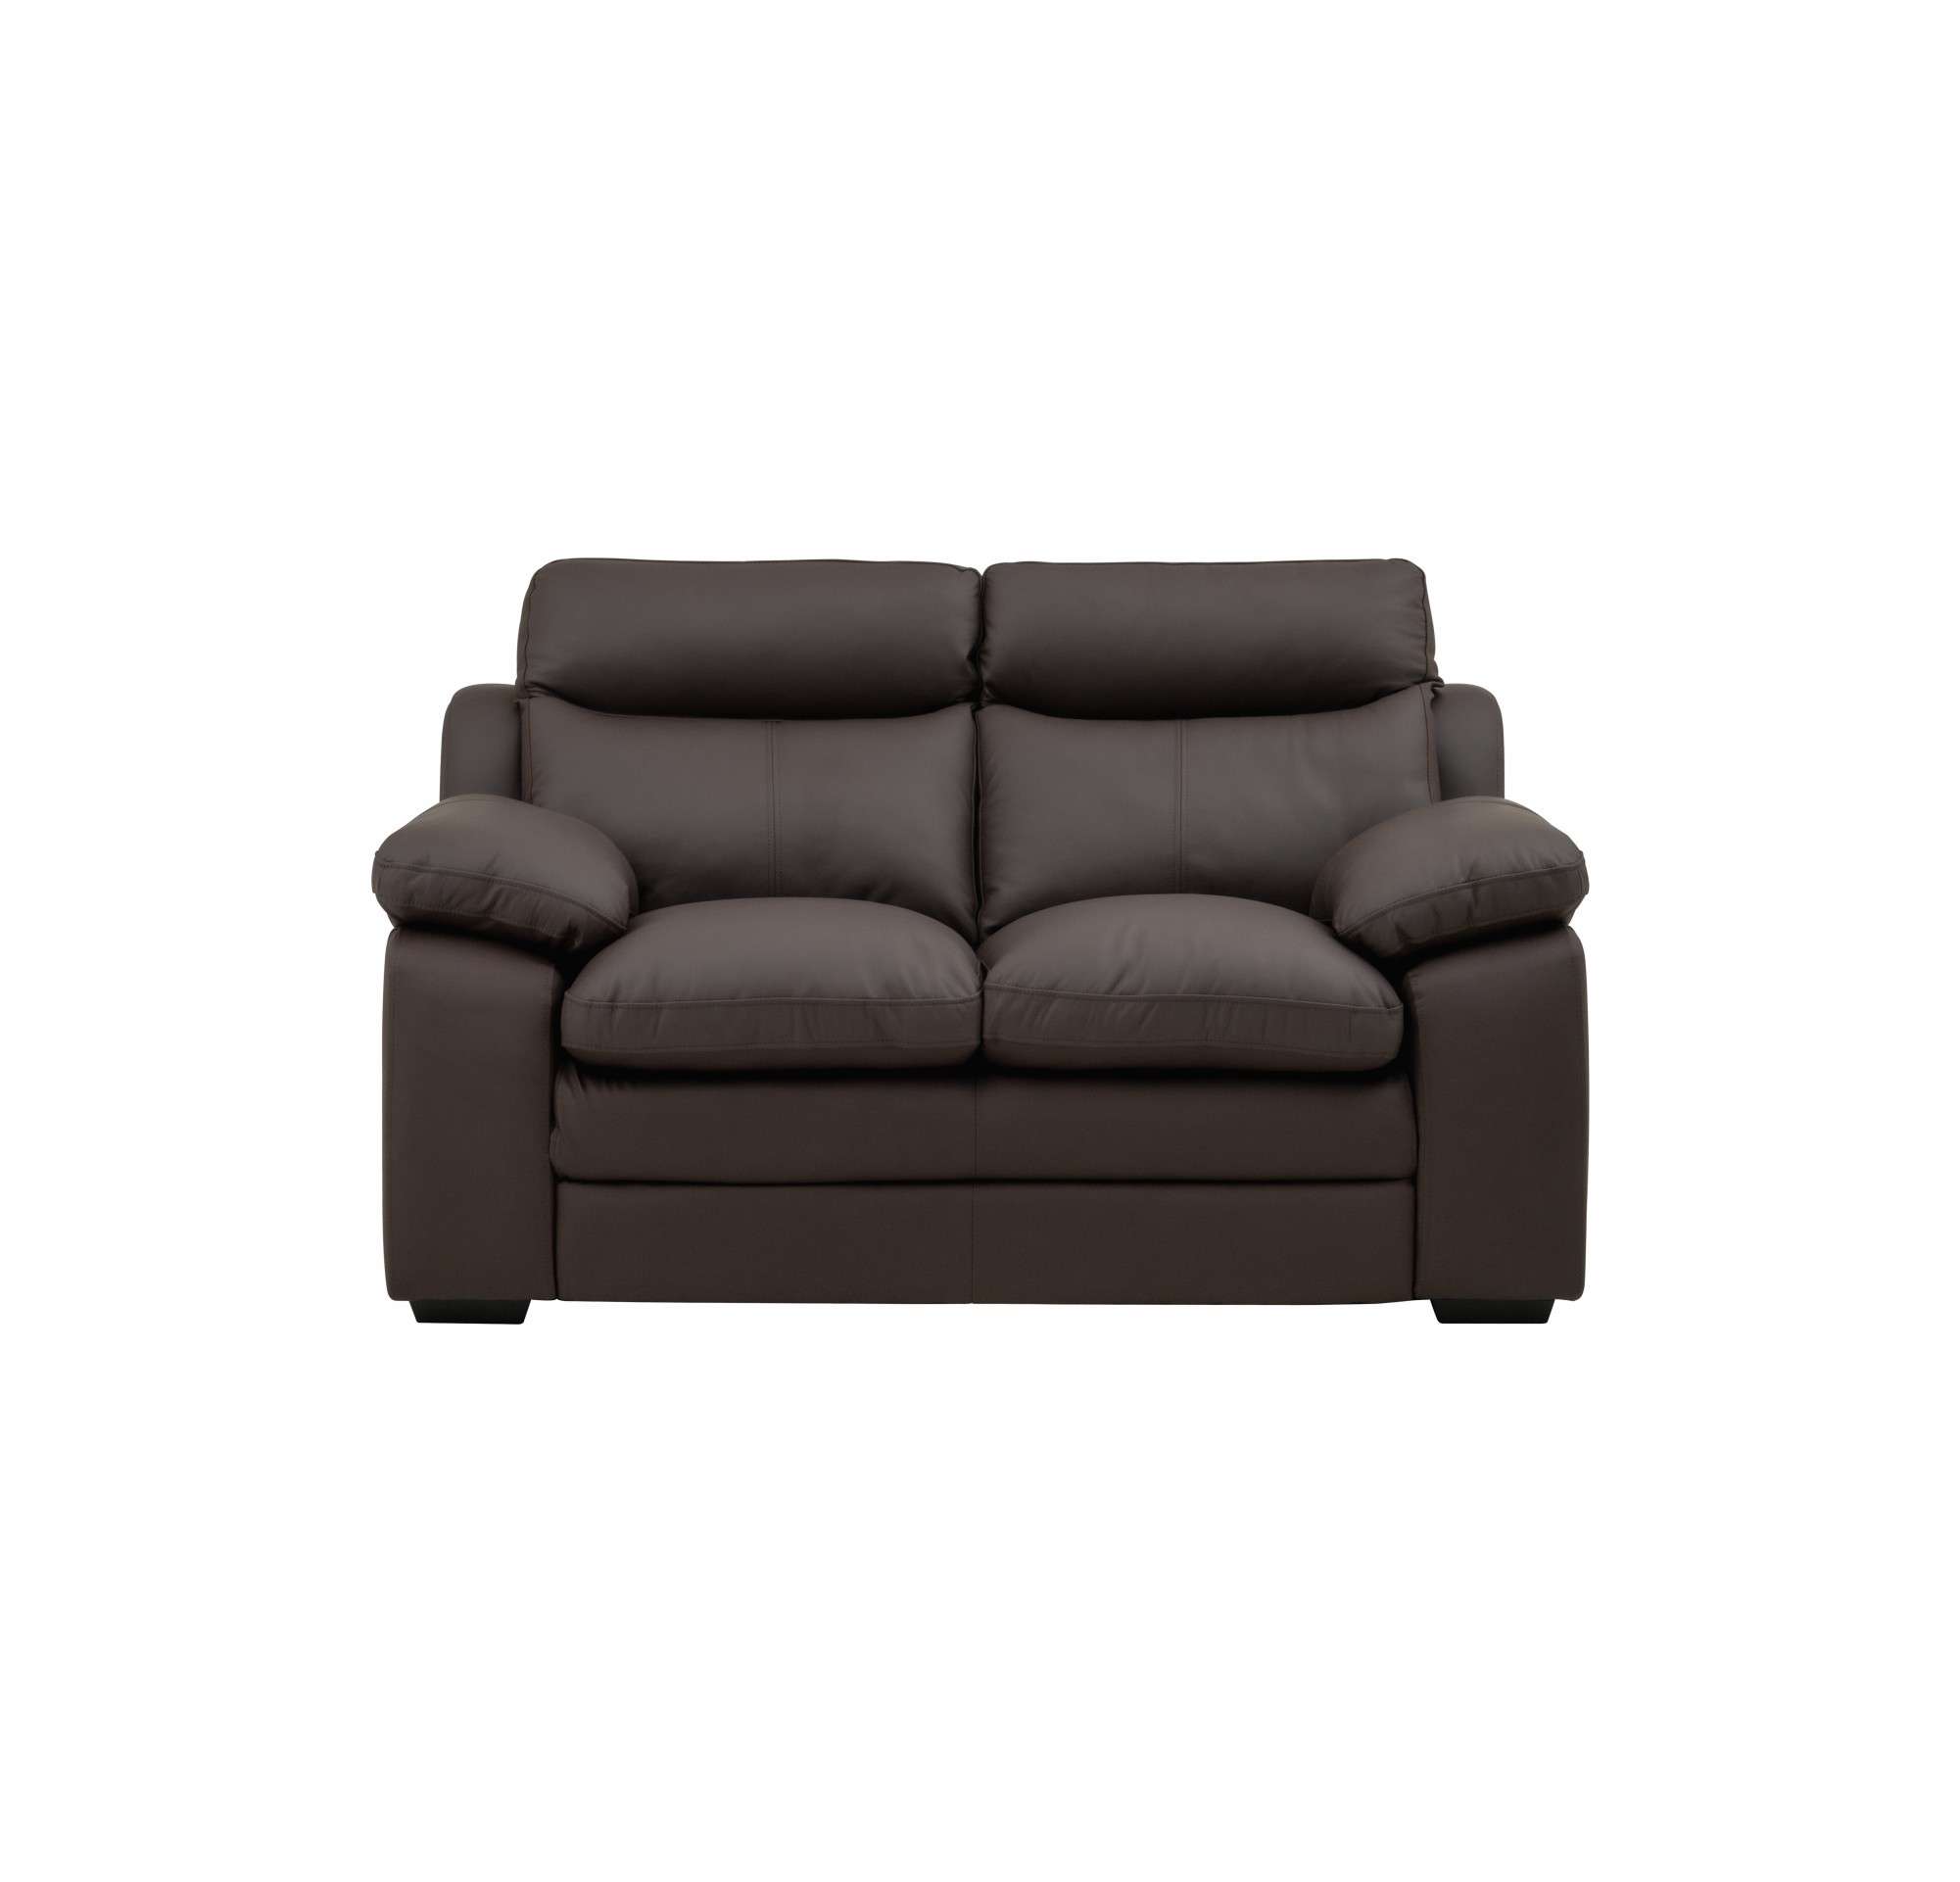 LDRSPX003+2-Proxima Sofa Set-HLIL03